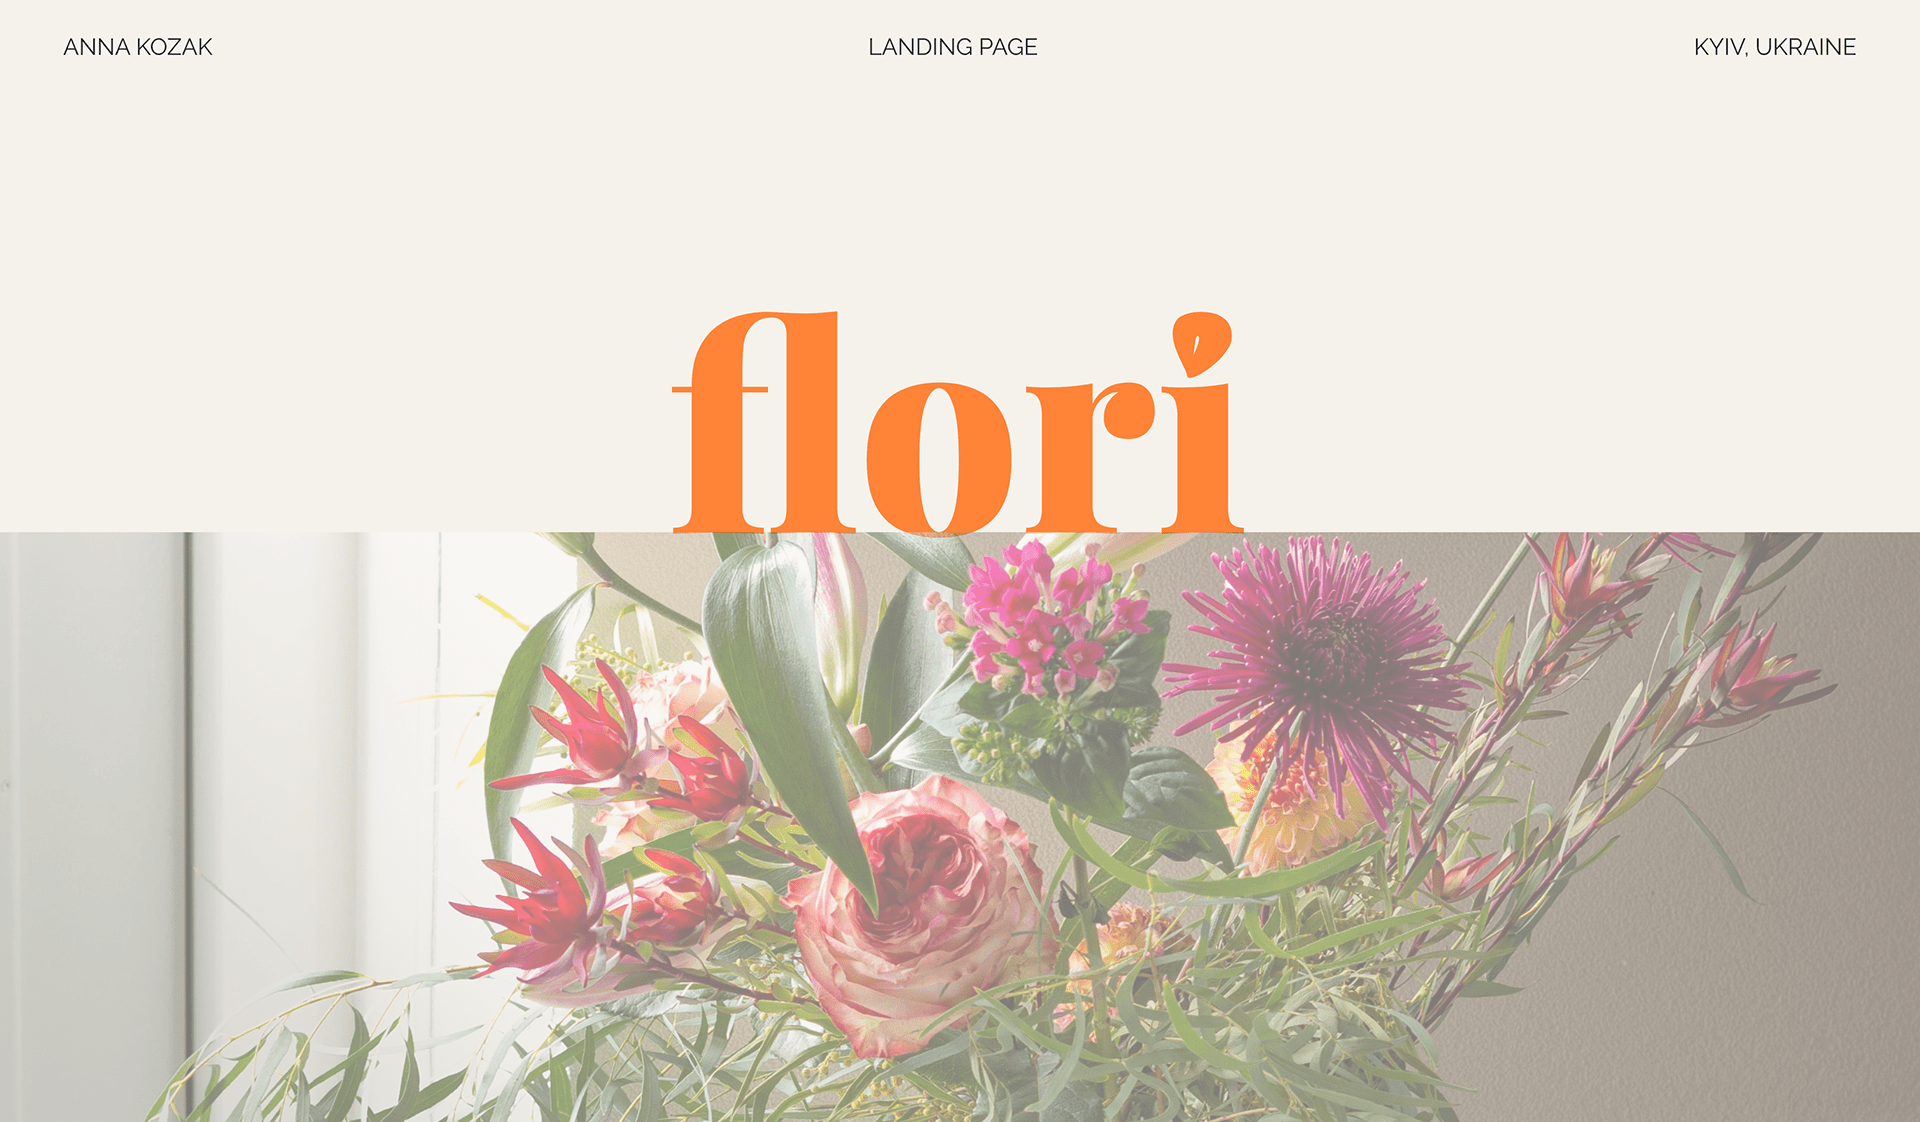 FLORI | landing page design